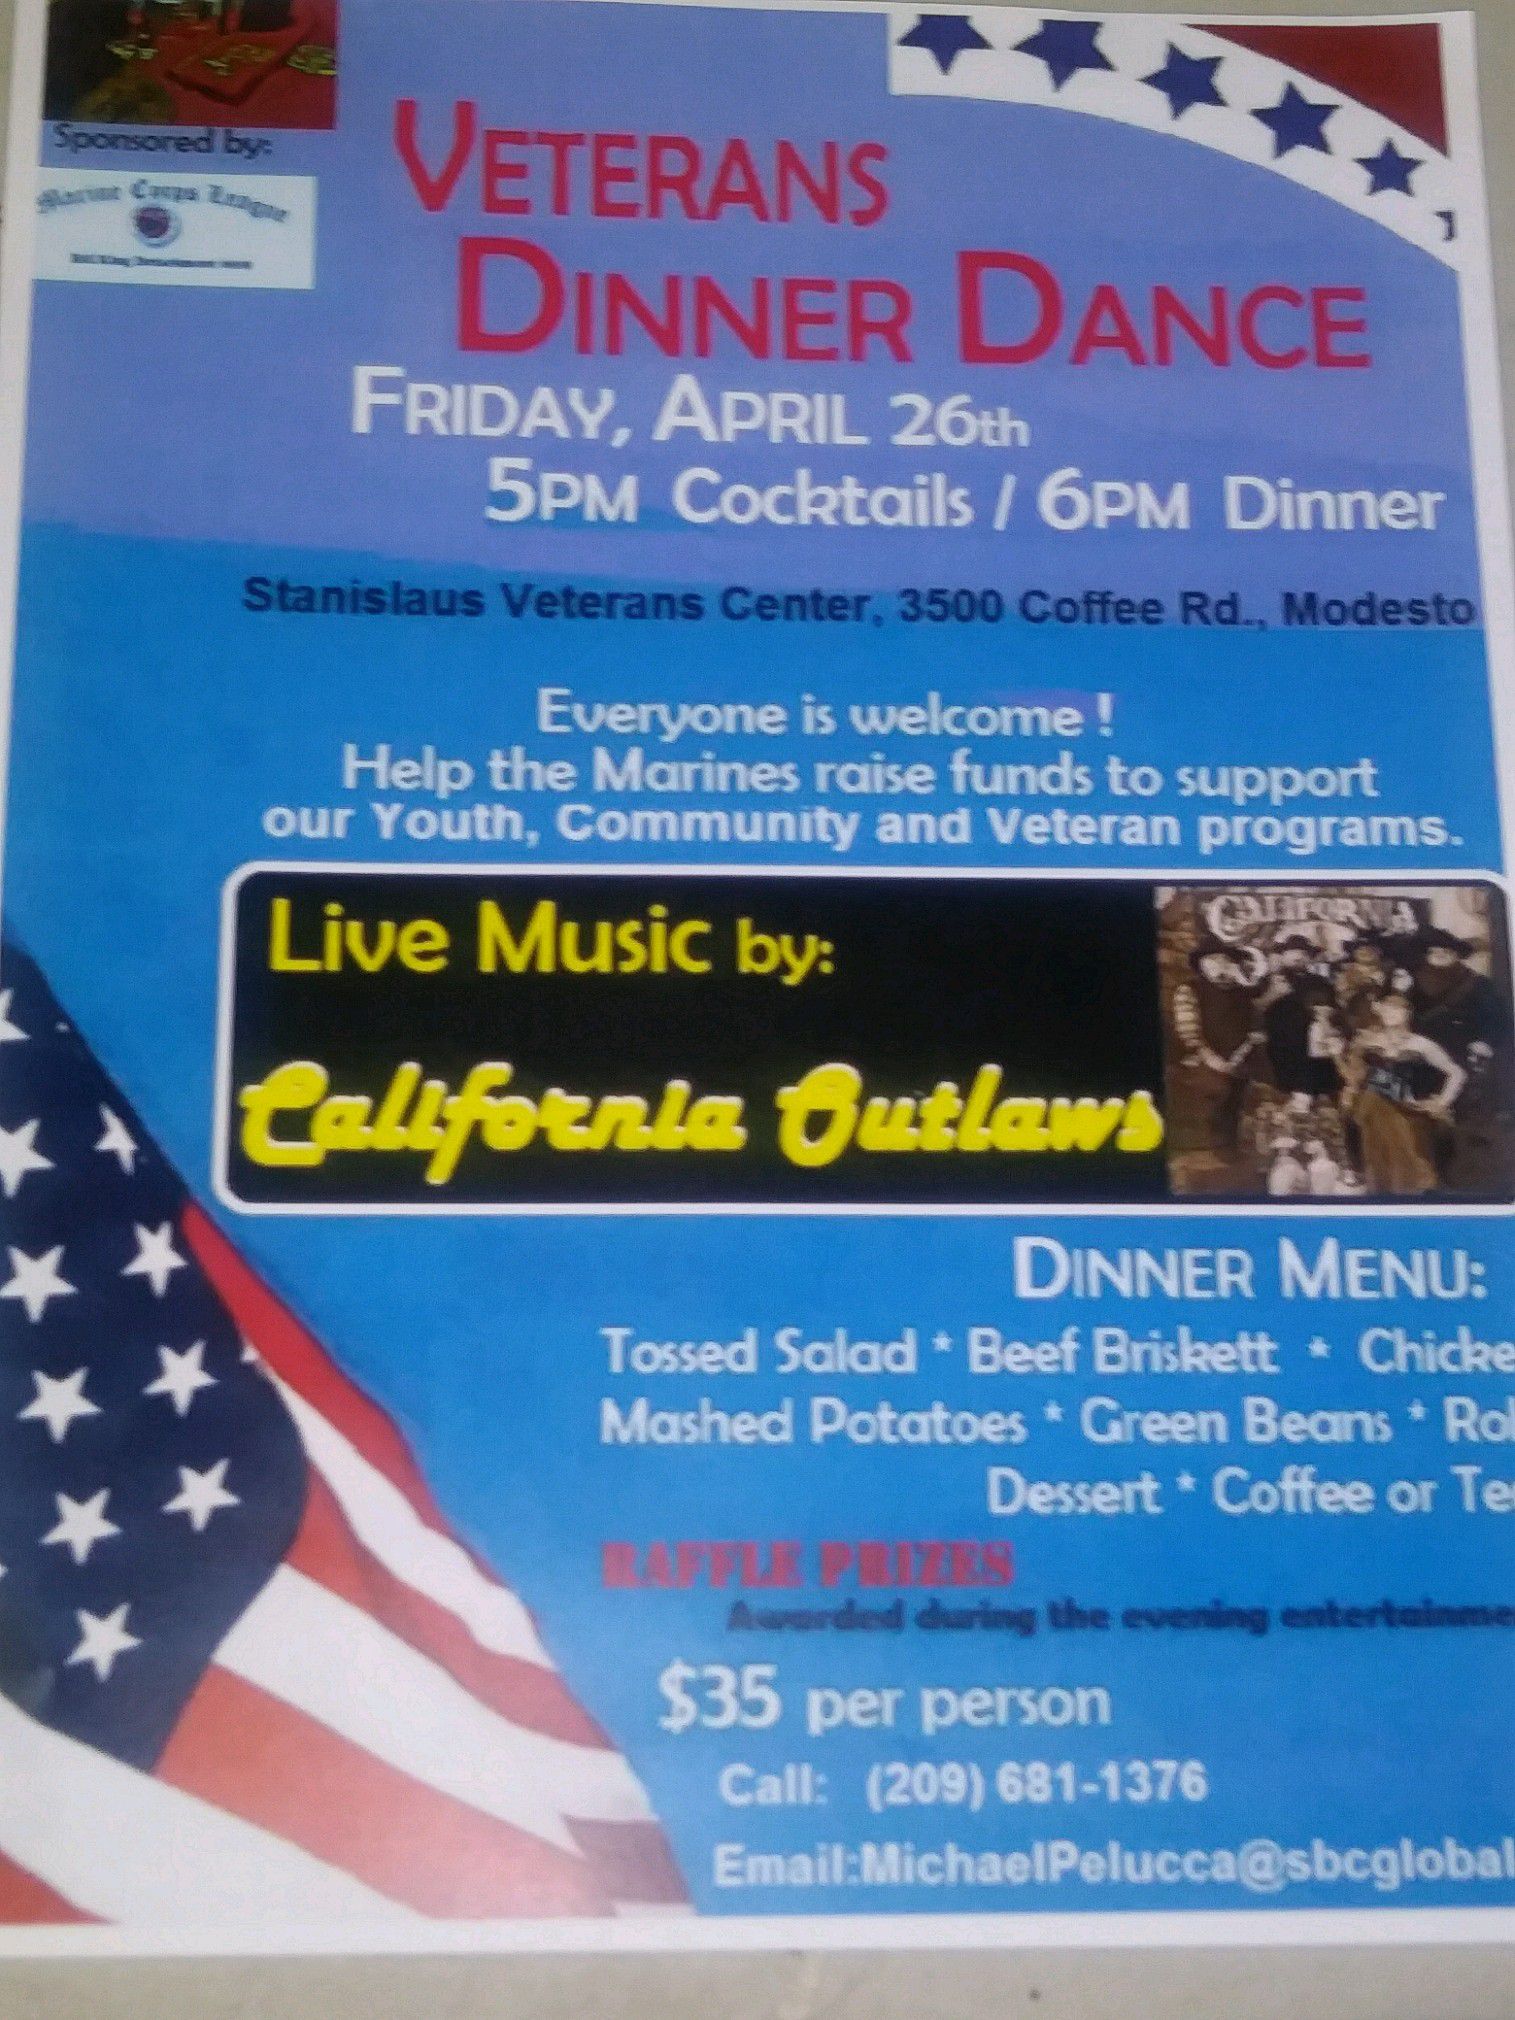 Veterans dinner dance